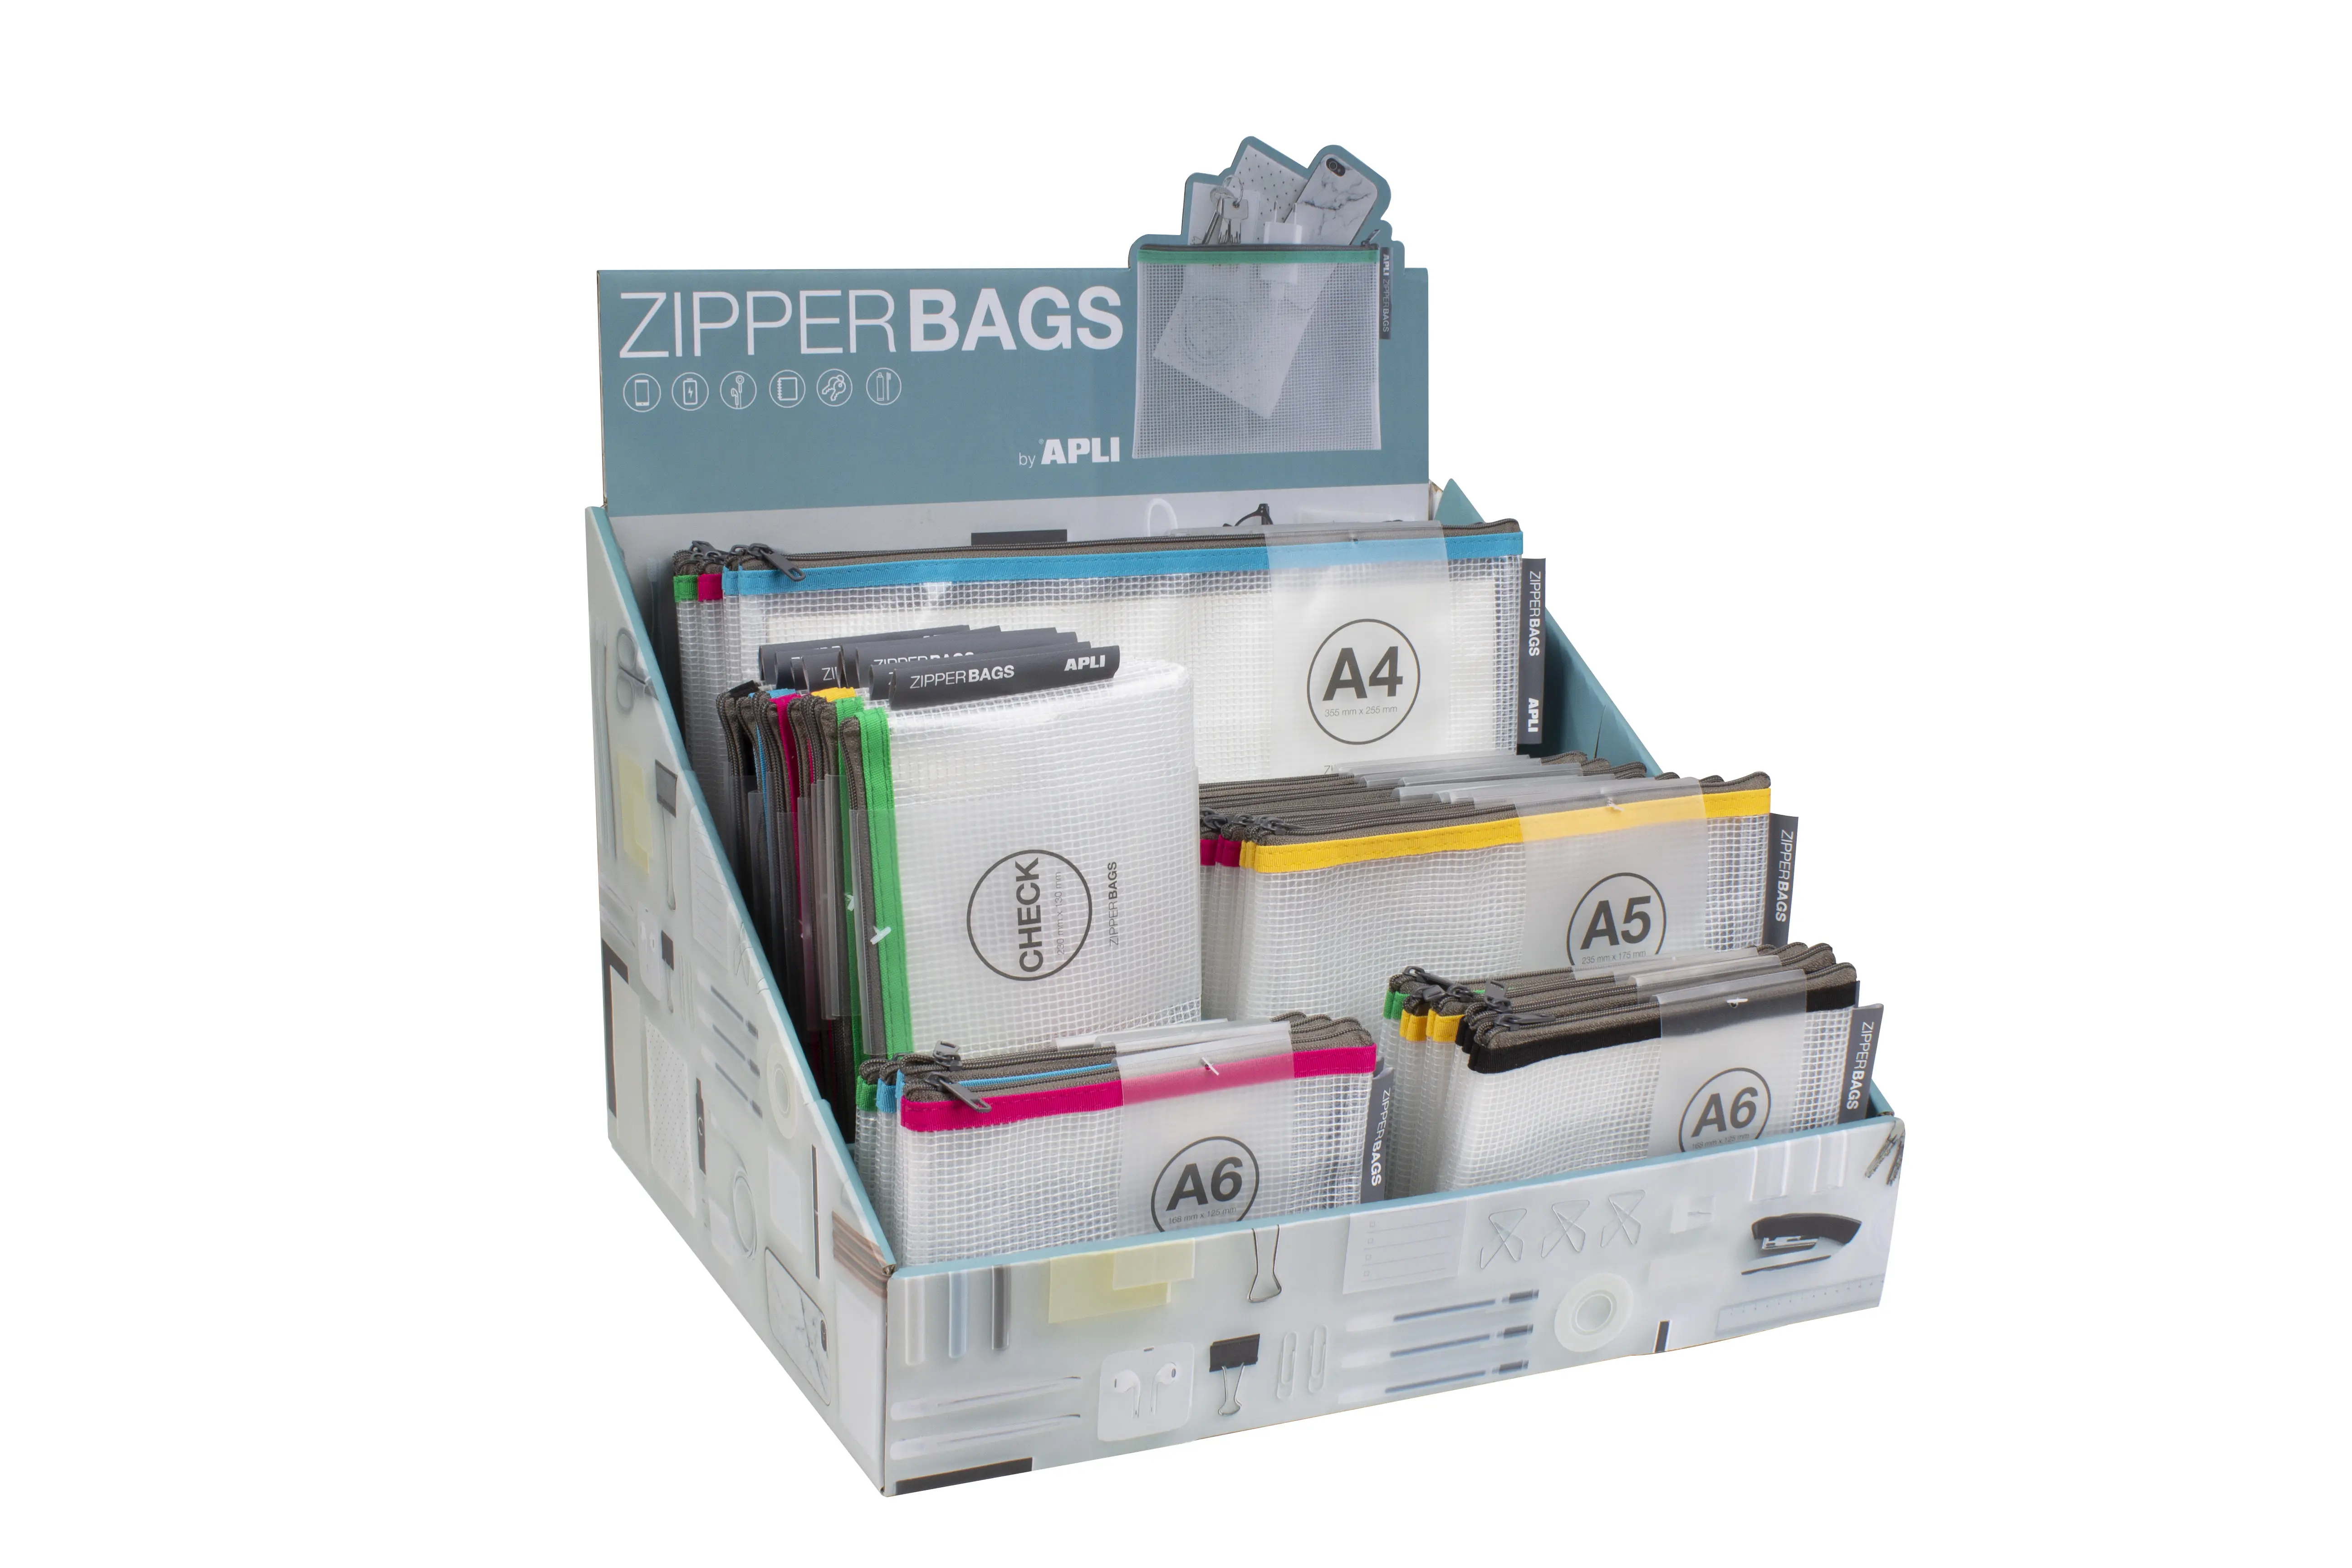 Apli Expositor de Zipper Bags - 80 Unidades en 4 Medidas Surtidas - 5 Colores Resistentes - Goma Eva